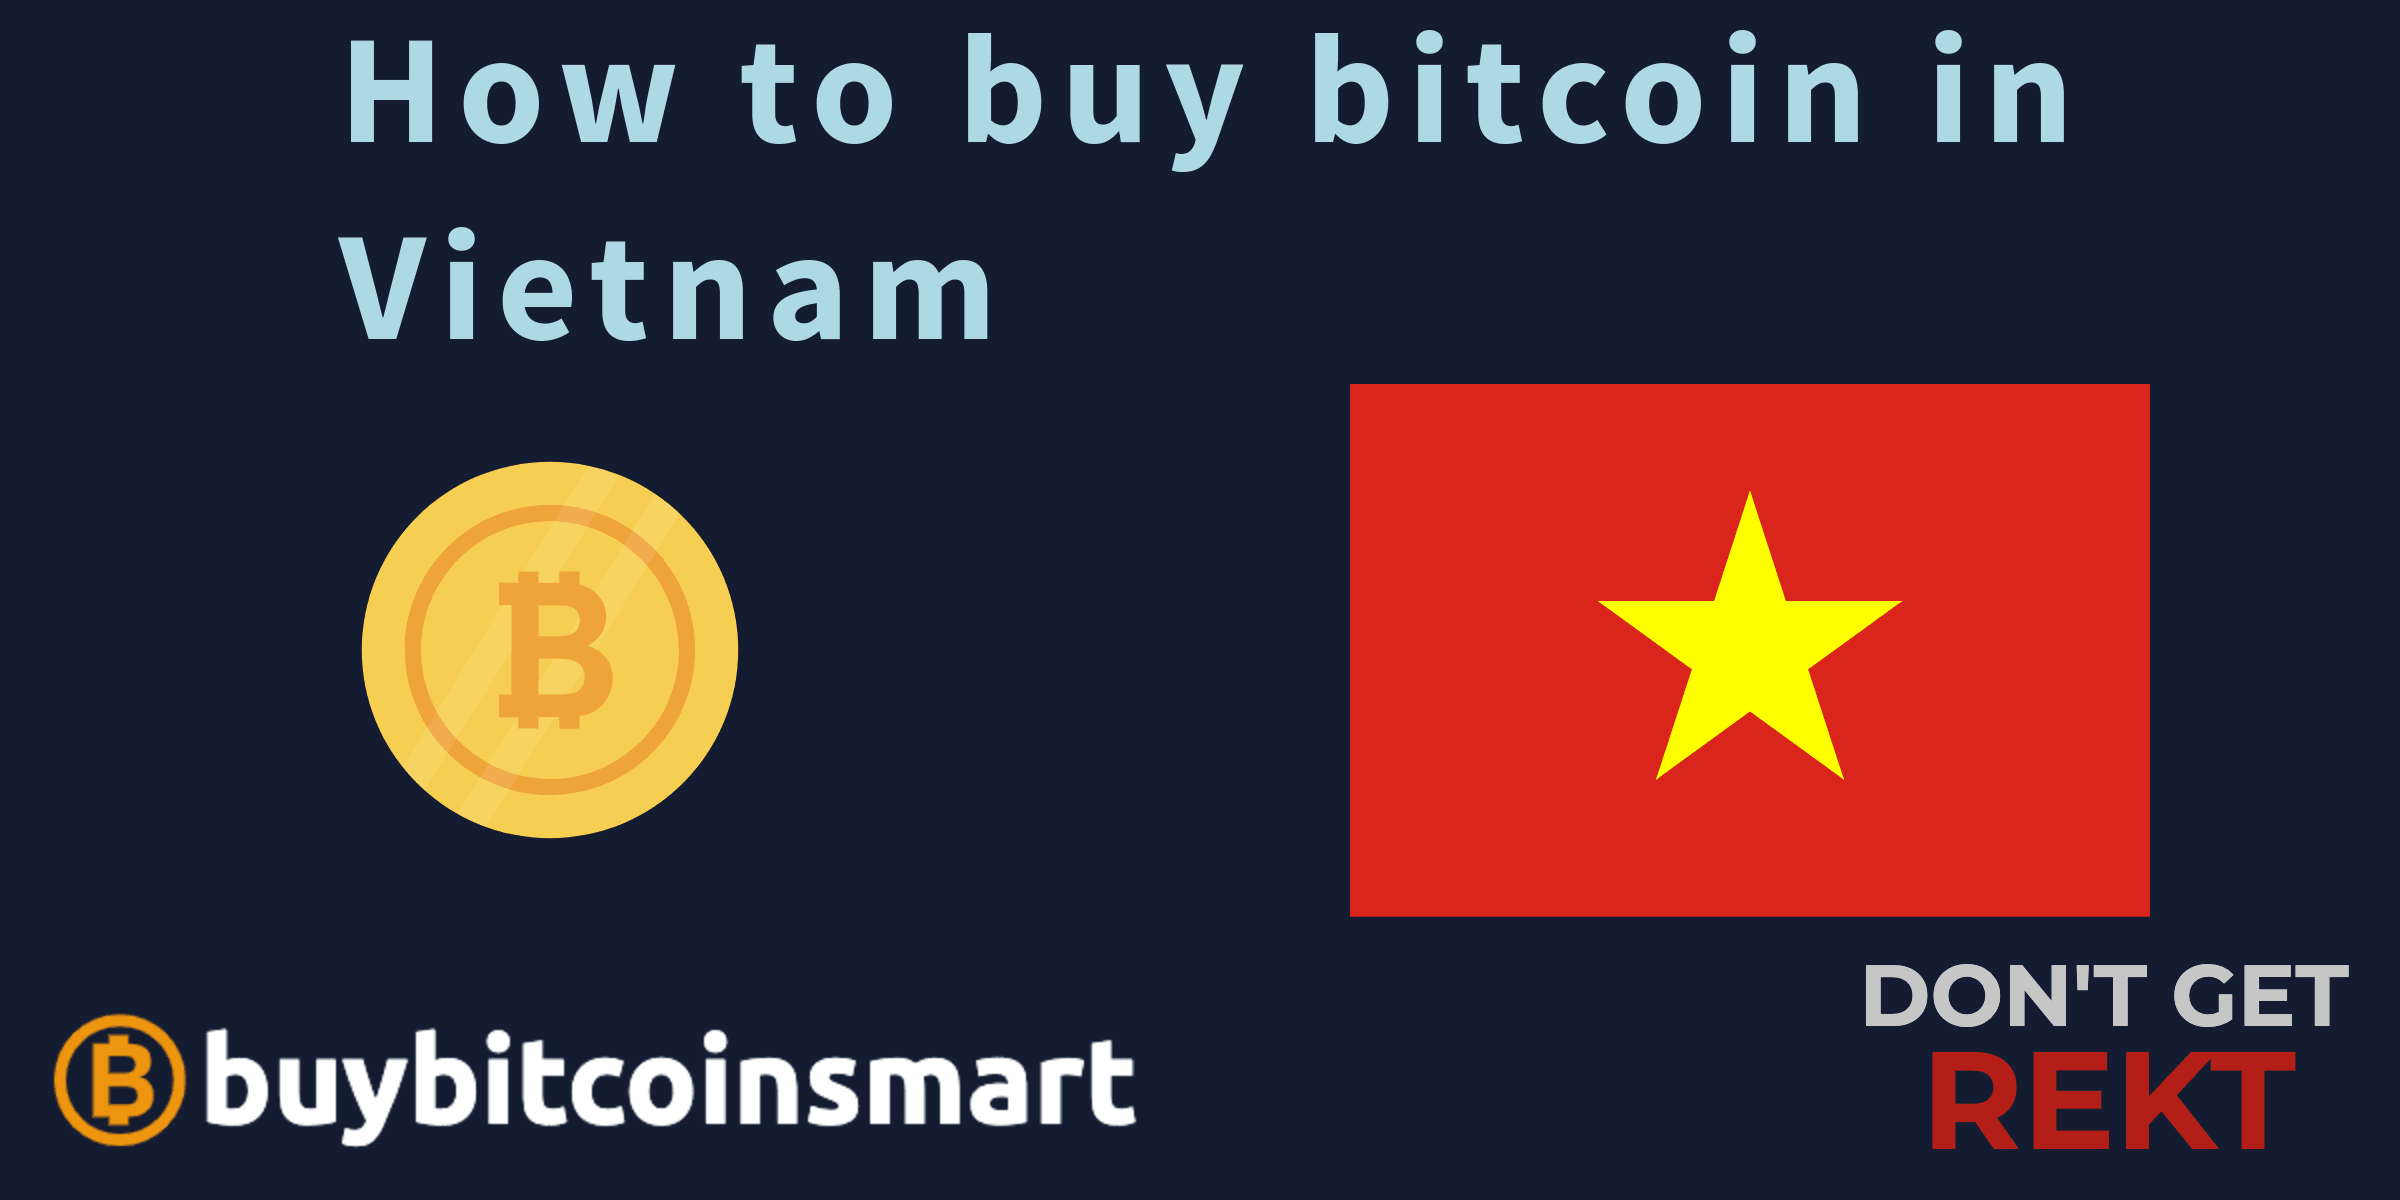 How to buy bitcoin in Vietnam